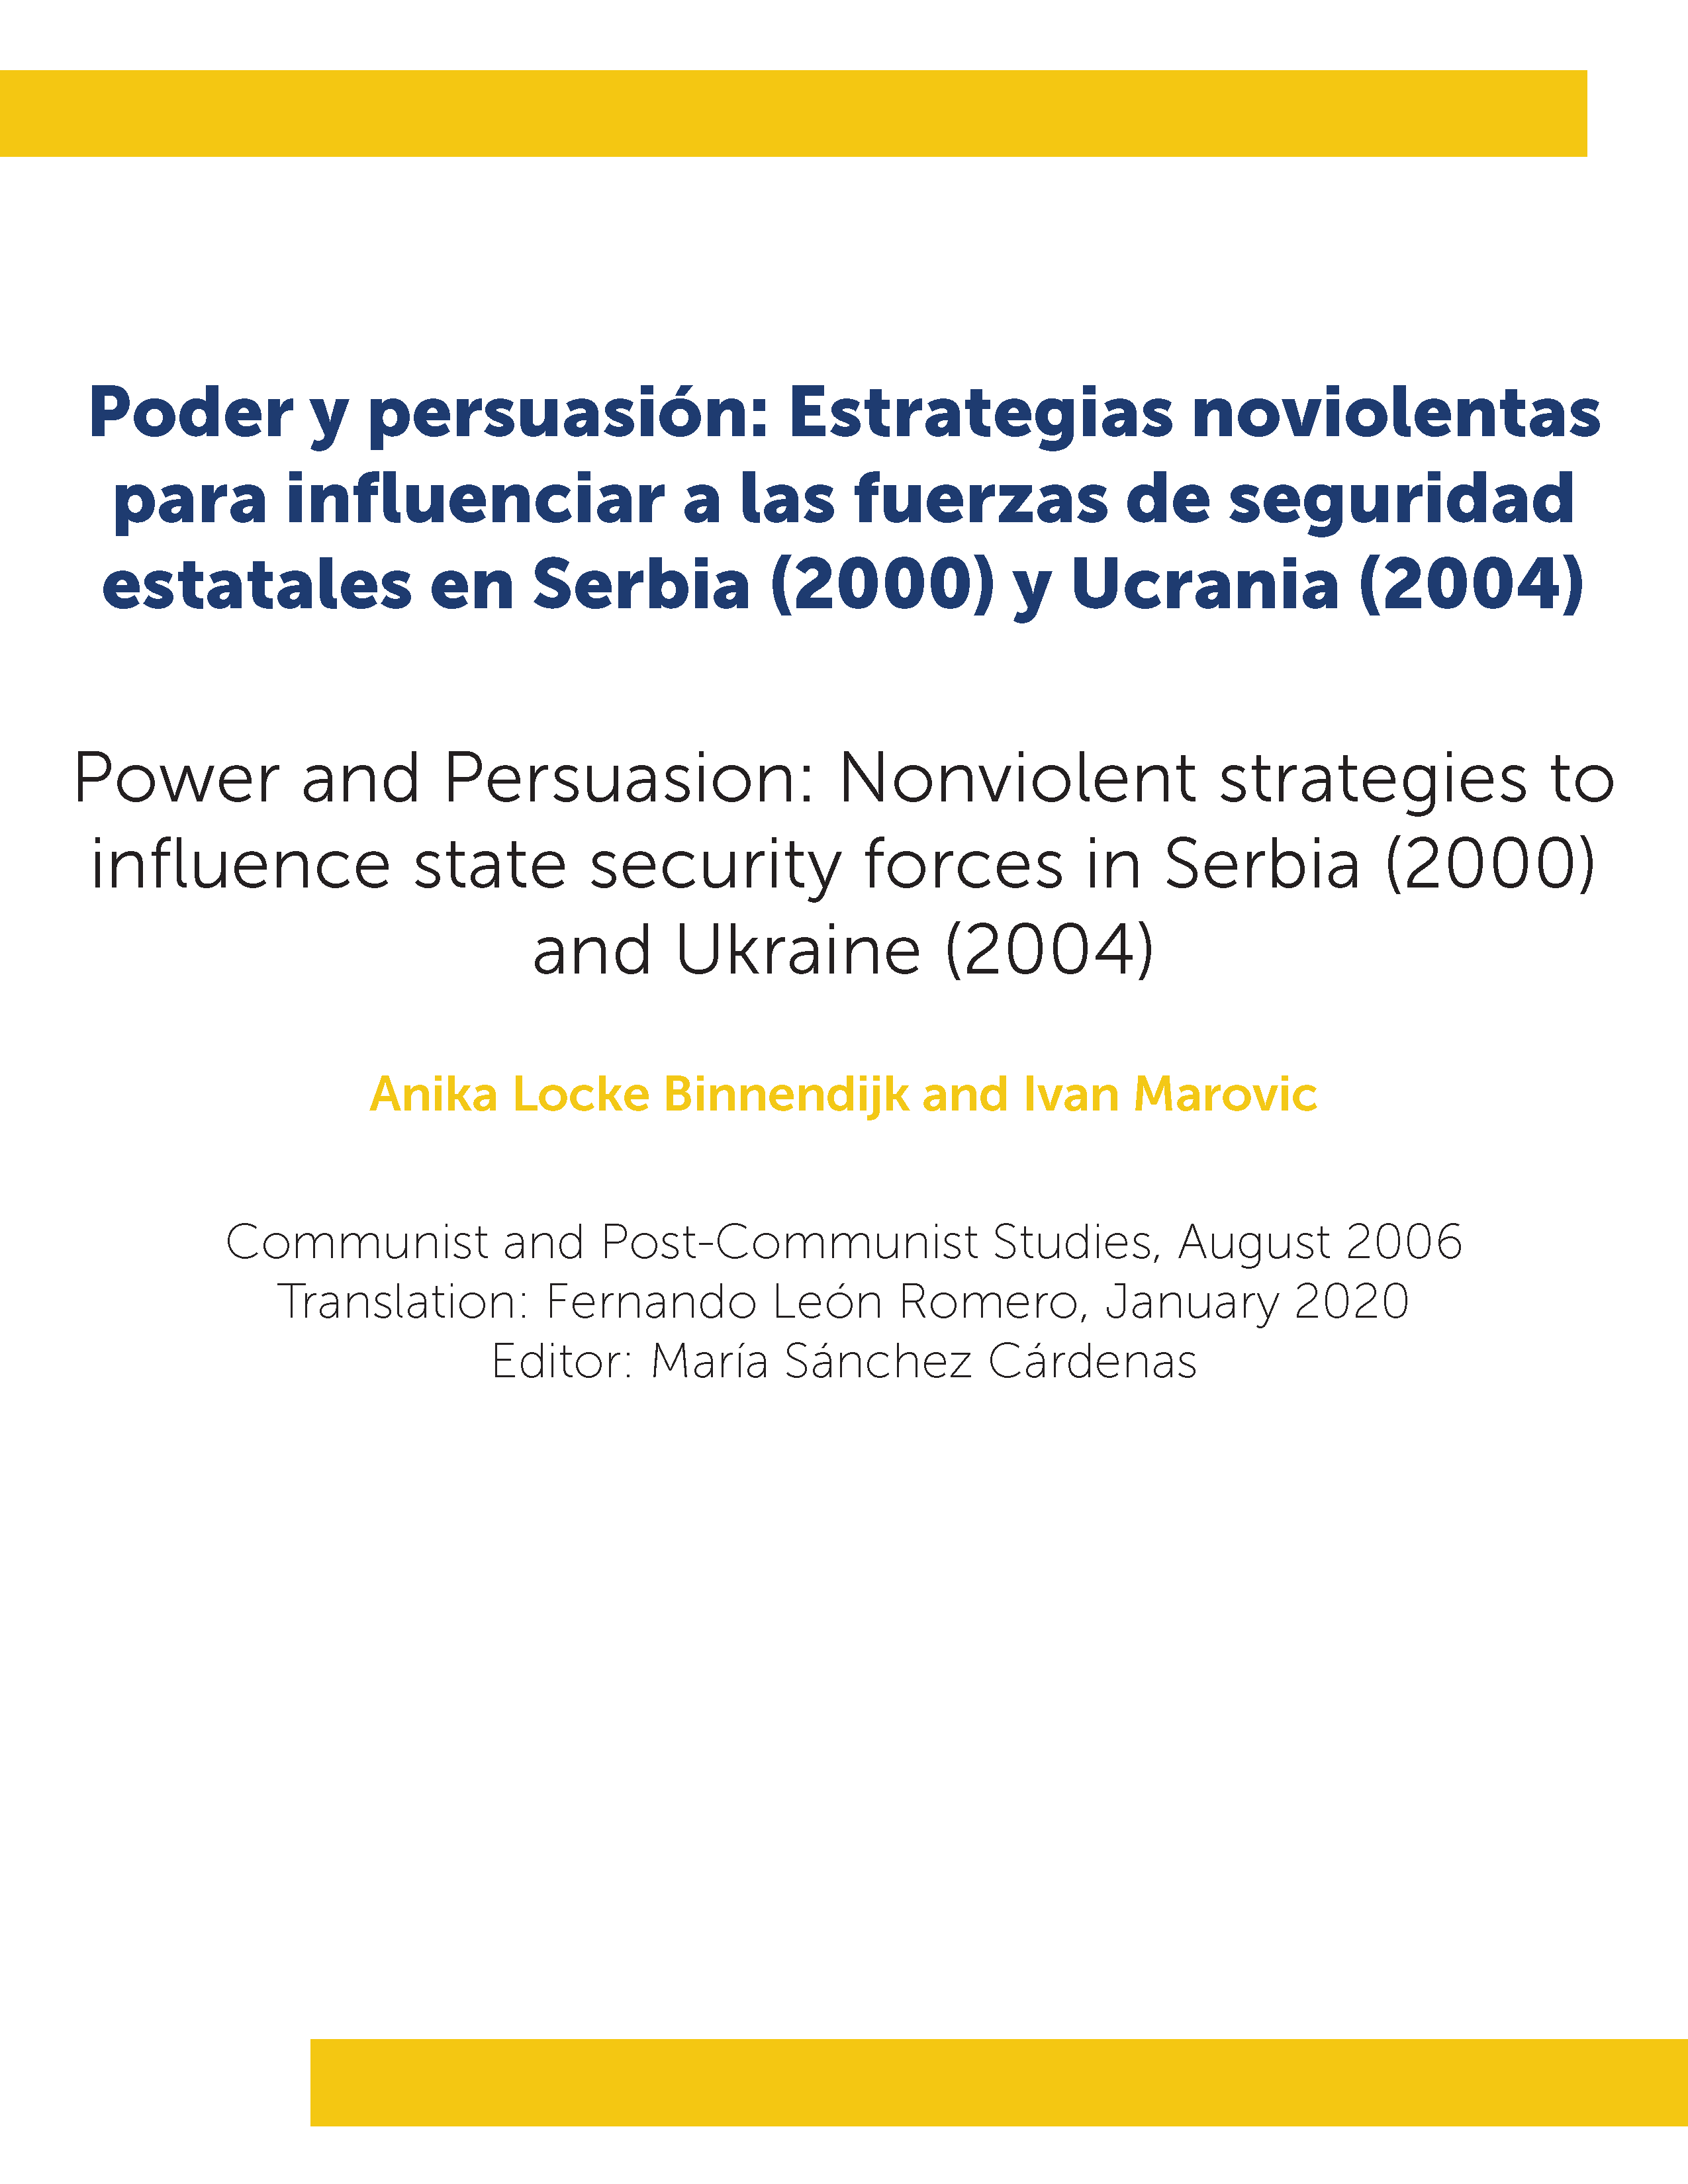 Poder y persuasión: Estrategias noviolentas para influenciar a las fuerzas de seguridad estatales en Serbia (2000) y Ucrania (2004)